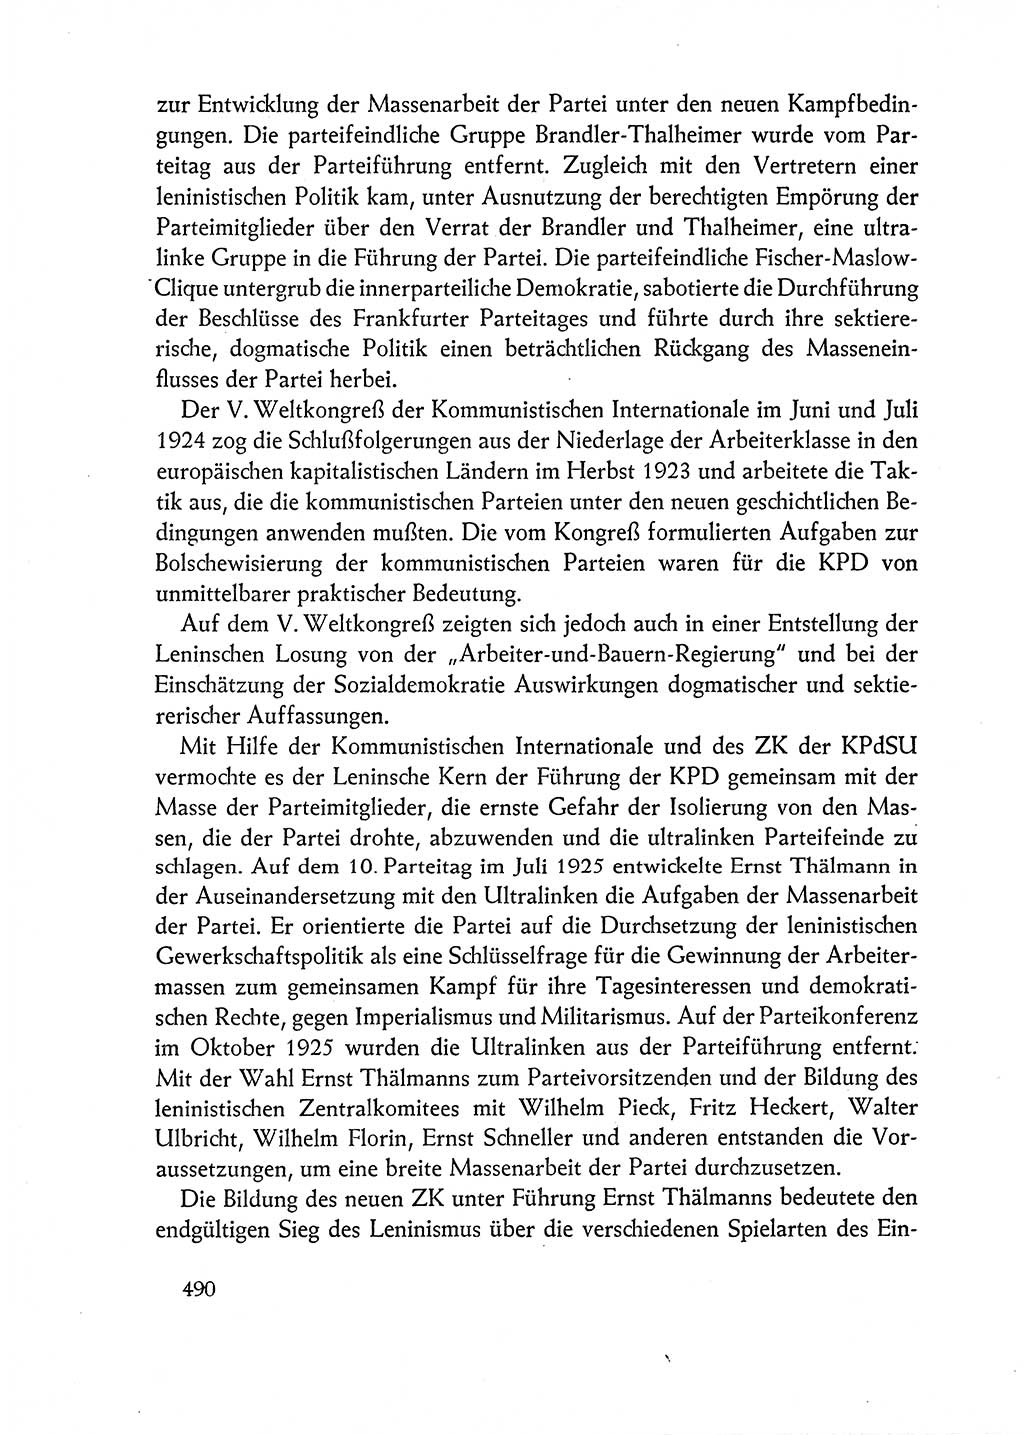 Dokumente der Sozialistischen Einheitspartei Deutschlands (SED) [Deutsche Demokratische Republik (DDR)] 1962-1963, Seite 490 (Dok. SED DDR 1962-1963, S. 490)